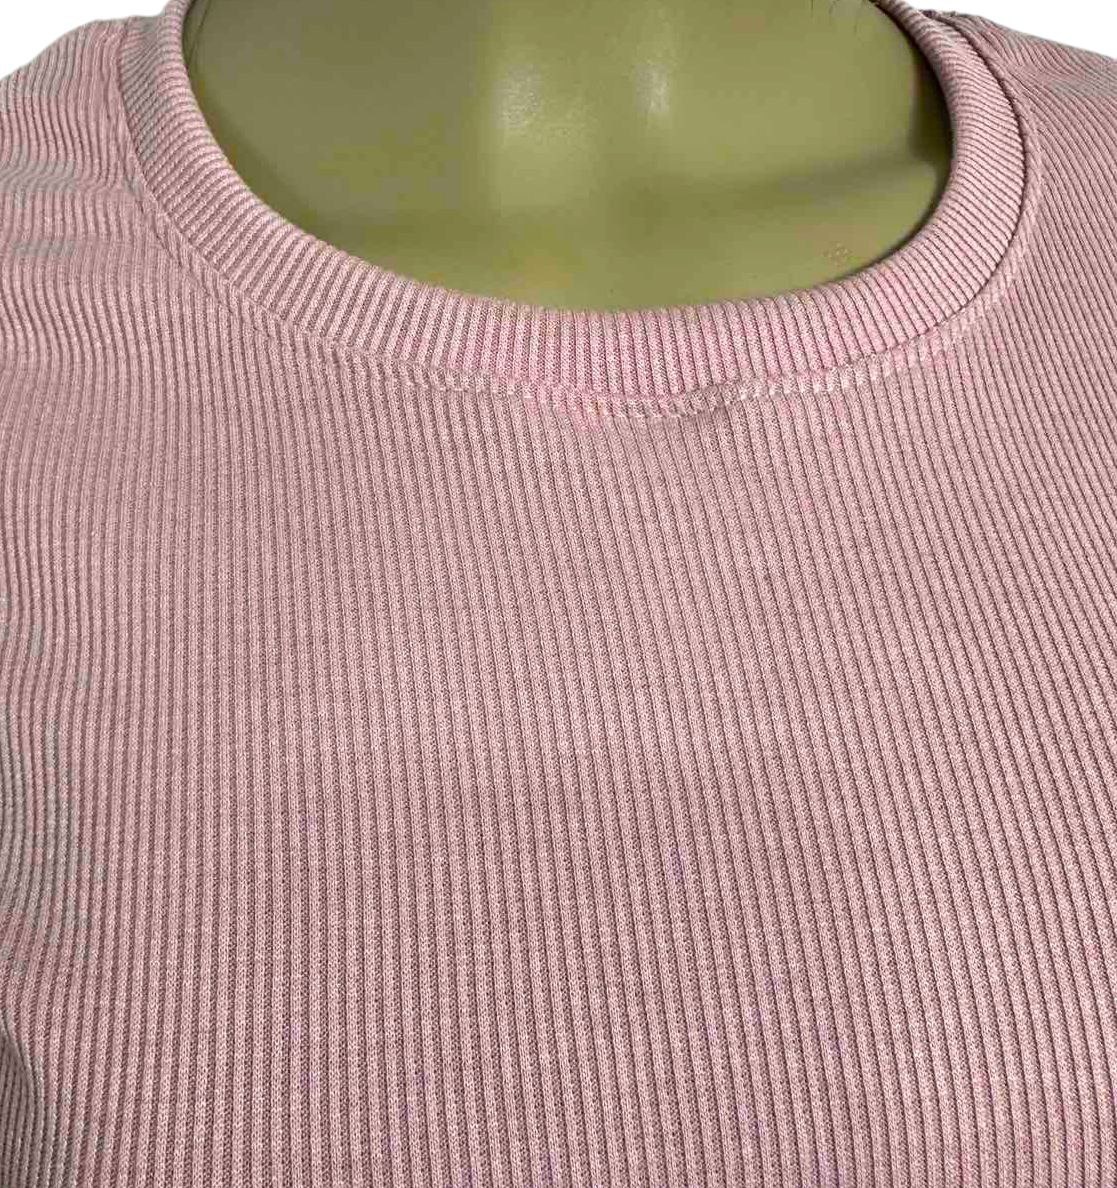 Комплект женский футболка с шортами мустанг рубчик пудрового цвета, Пудровый, 48